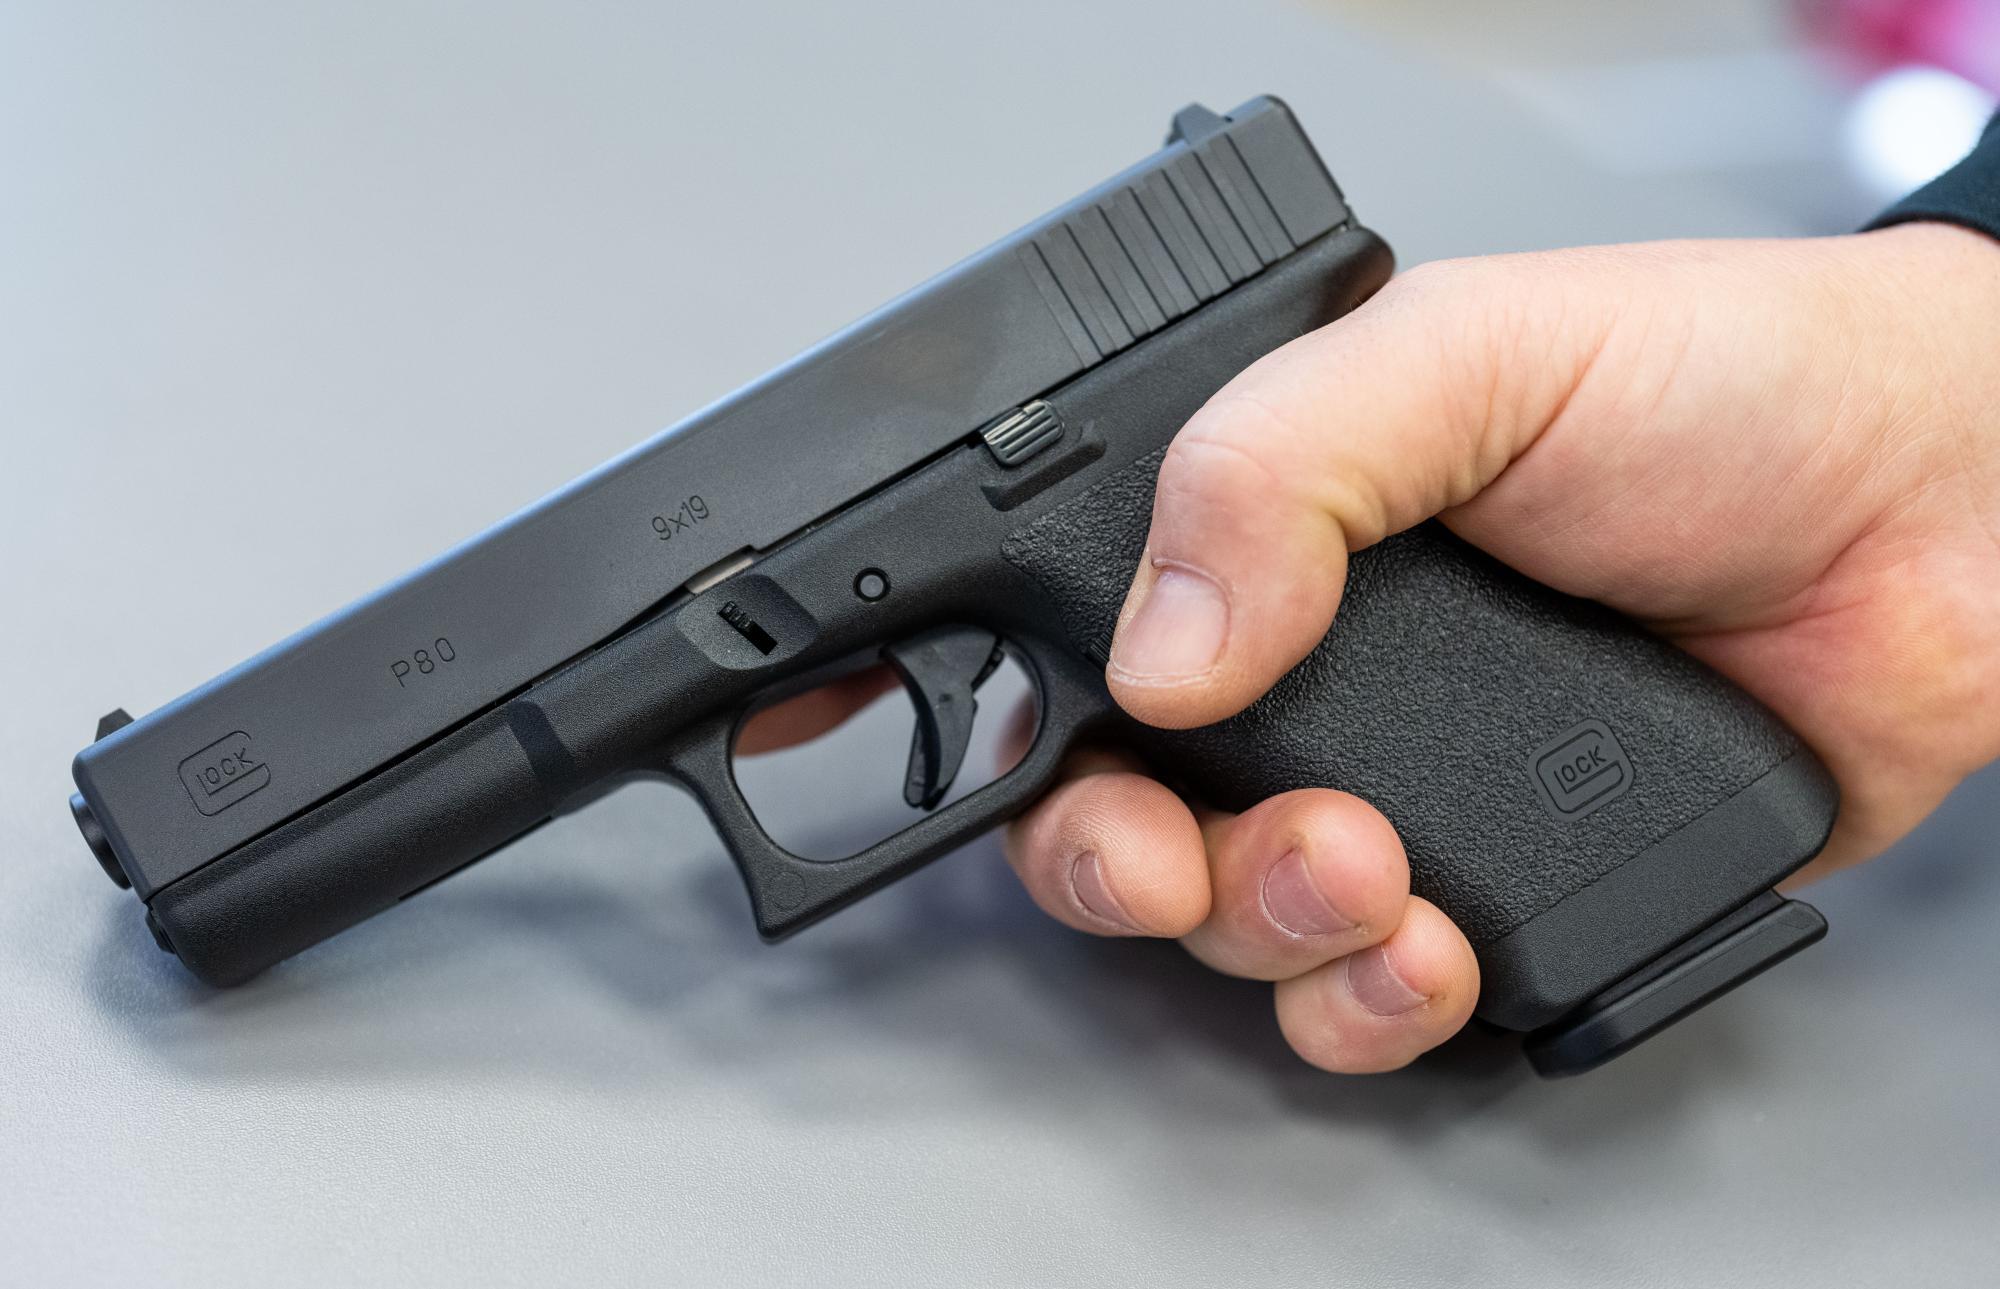 Bei Streit Pistole gezückt: 41-Jähriger hatte kleines Waffenarsenal